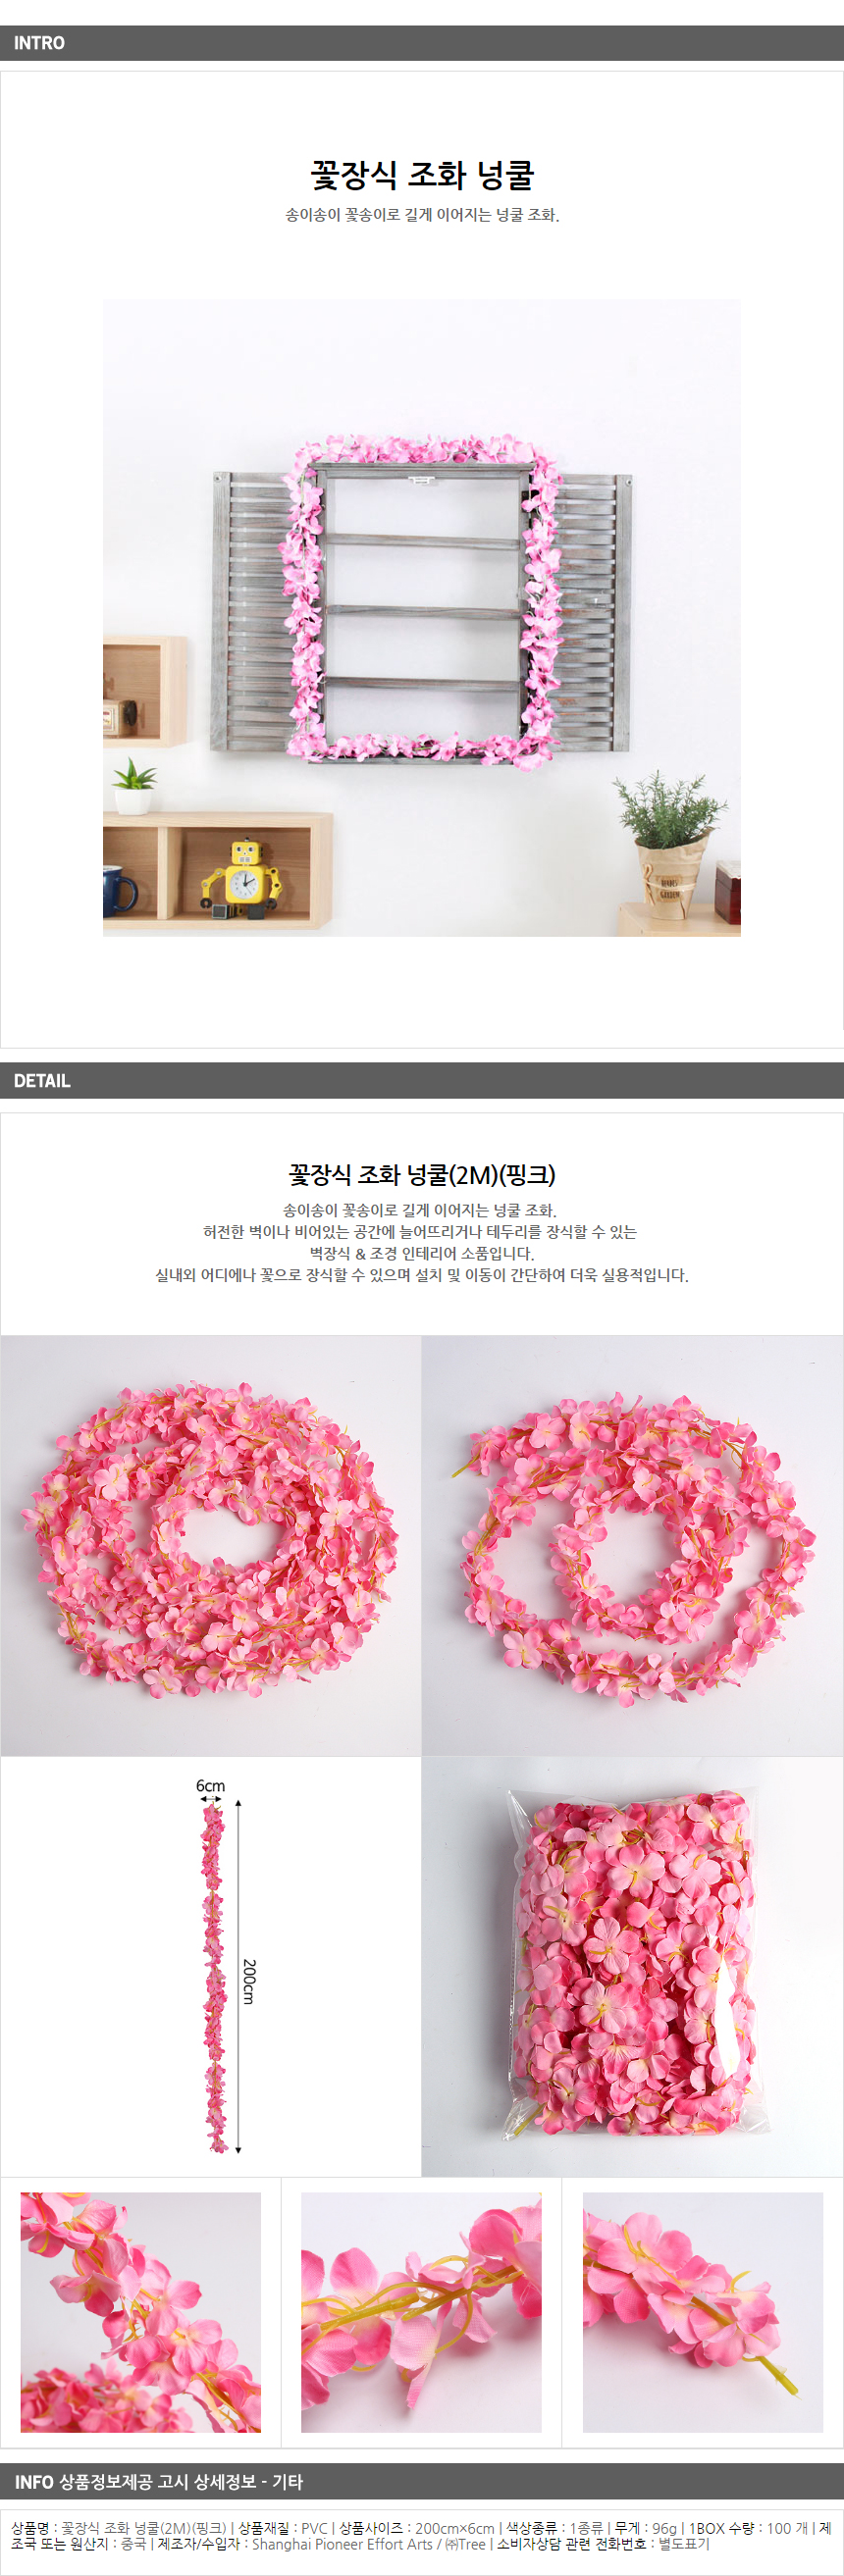 꽃장식 조화 넝쿨 핑크 2m / 네일아트 인테리어소품